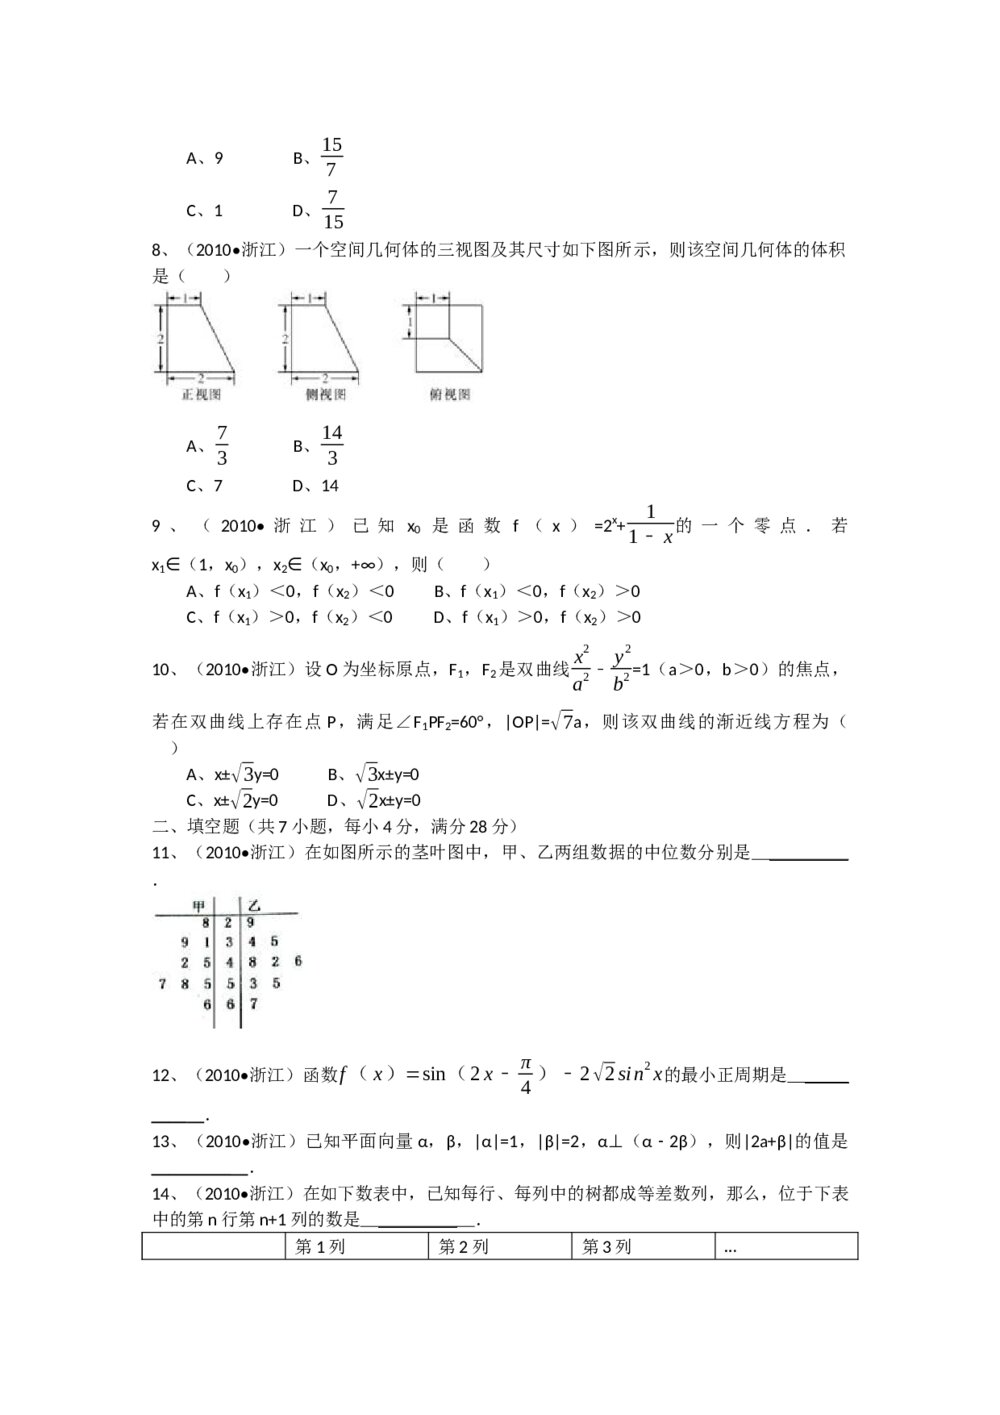 2010年高考浙江(文科)数学试题试卷及答案解答(精校版)2